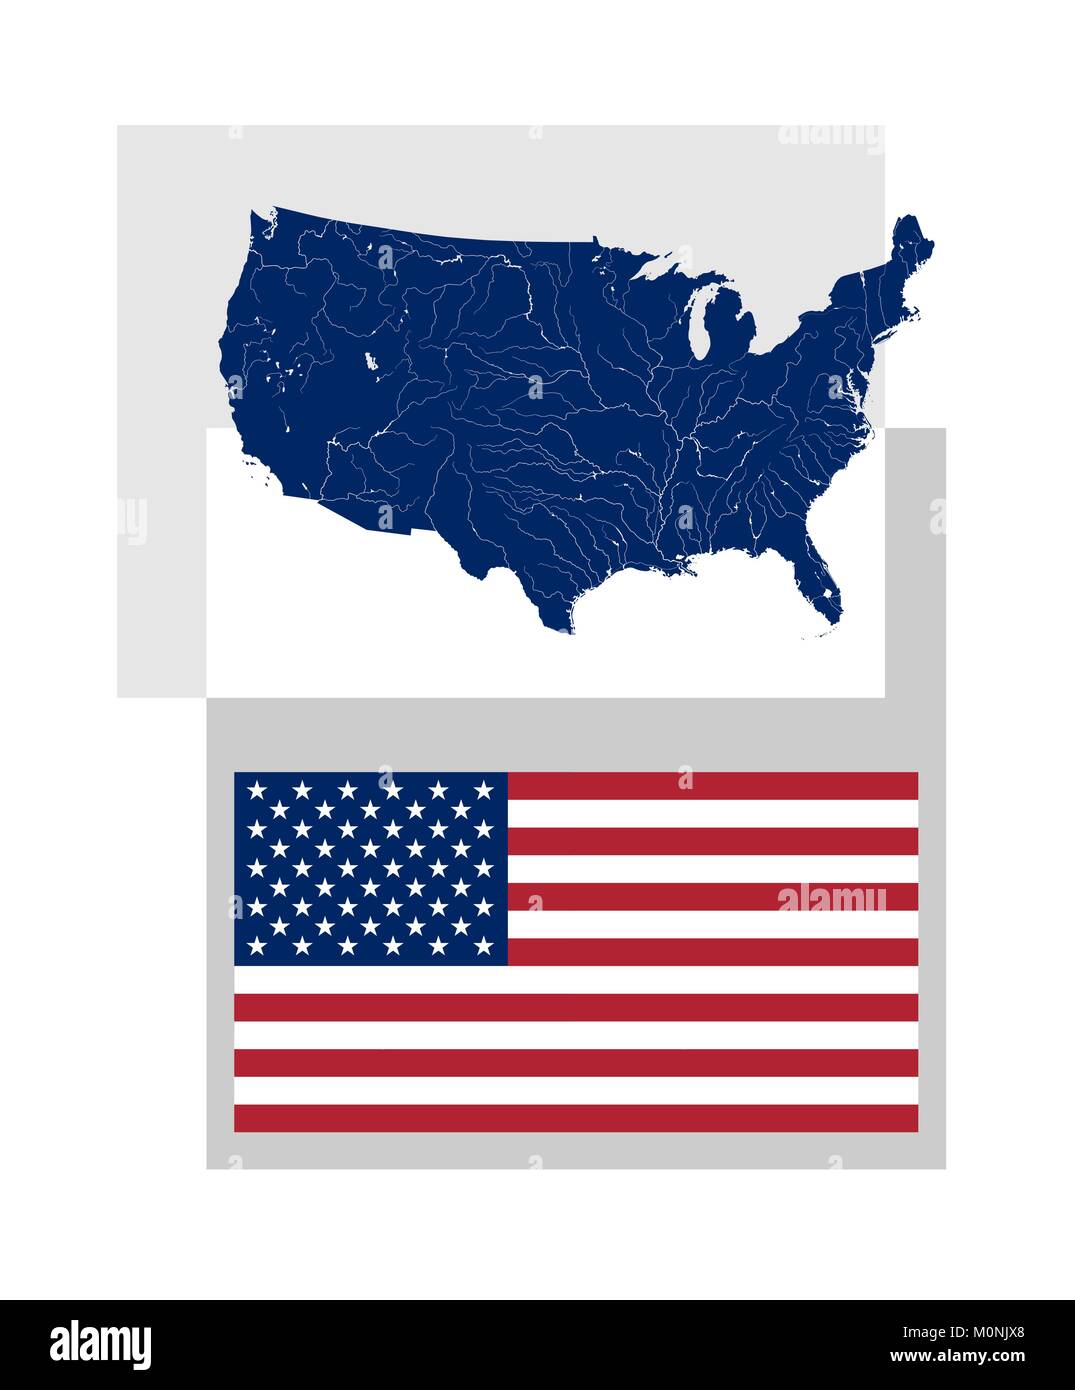 Karte der Vereinigten Staaten von Amerika mit Flüssen und Seen und der nationalen Flagge und der Stern der USA. Richtiges Design und Farben. Flüsse werden angezeigt. Stock Vektor